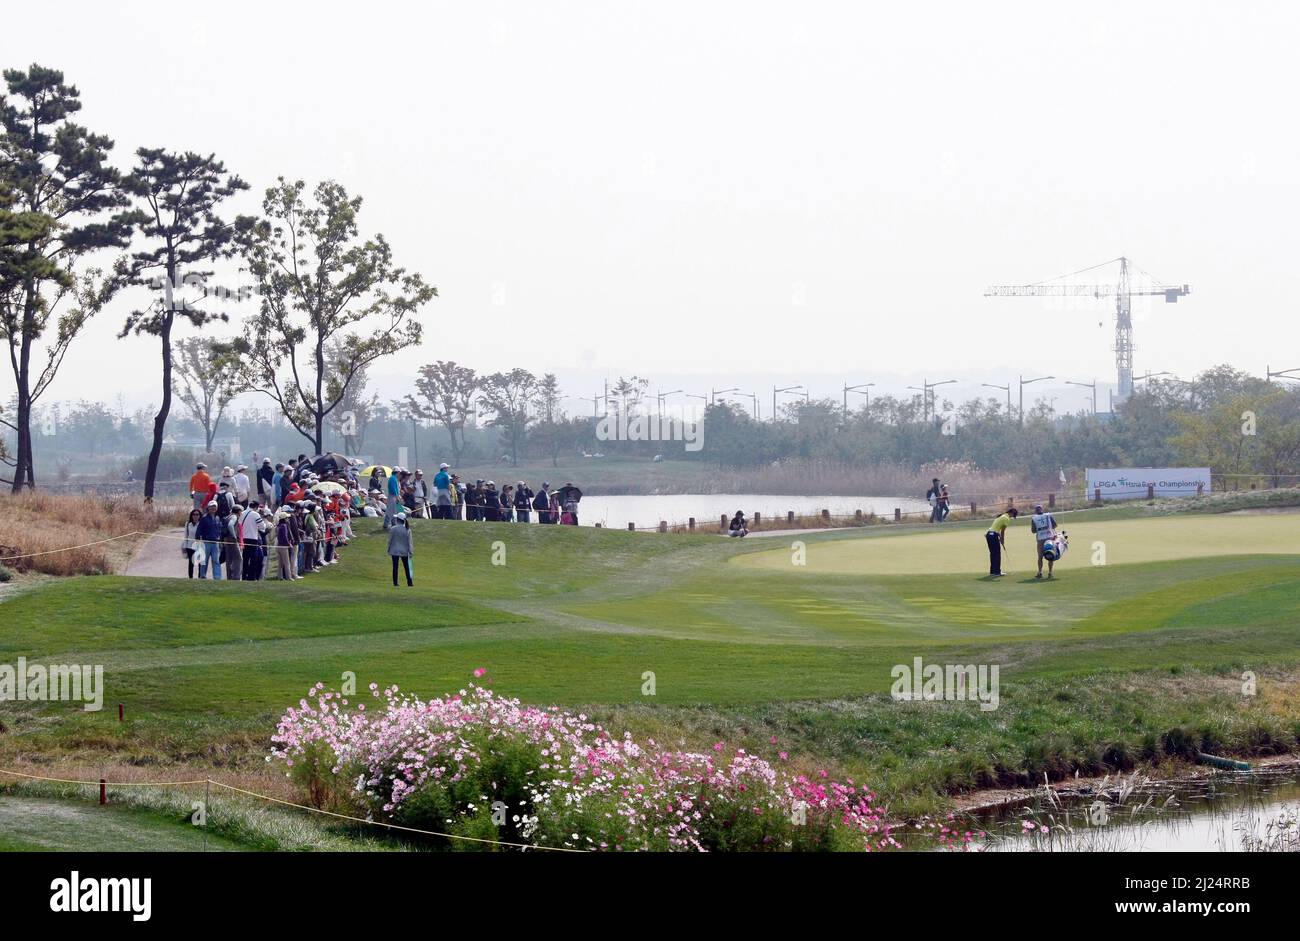 8 octobre 2011-Incheon, Corée du Sud-des spectateurs se rassemblent au vert pour assister à l'action lors du championnat LPGA par Hana Bank au club de golf SKY72 à Incheon le 8 octobre 2011, Corée du Sud. Banque D'Images